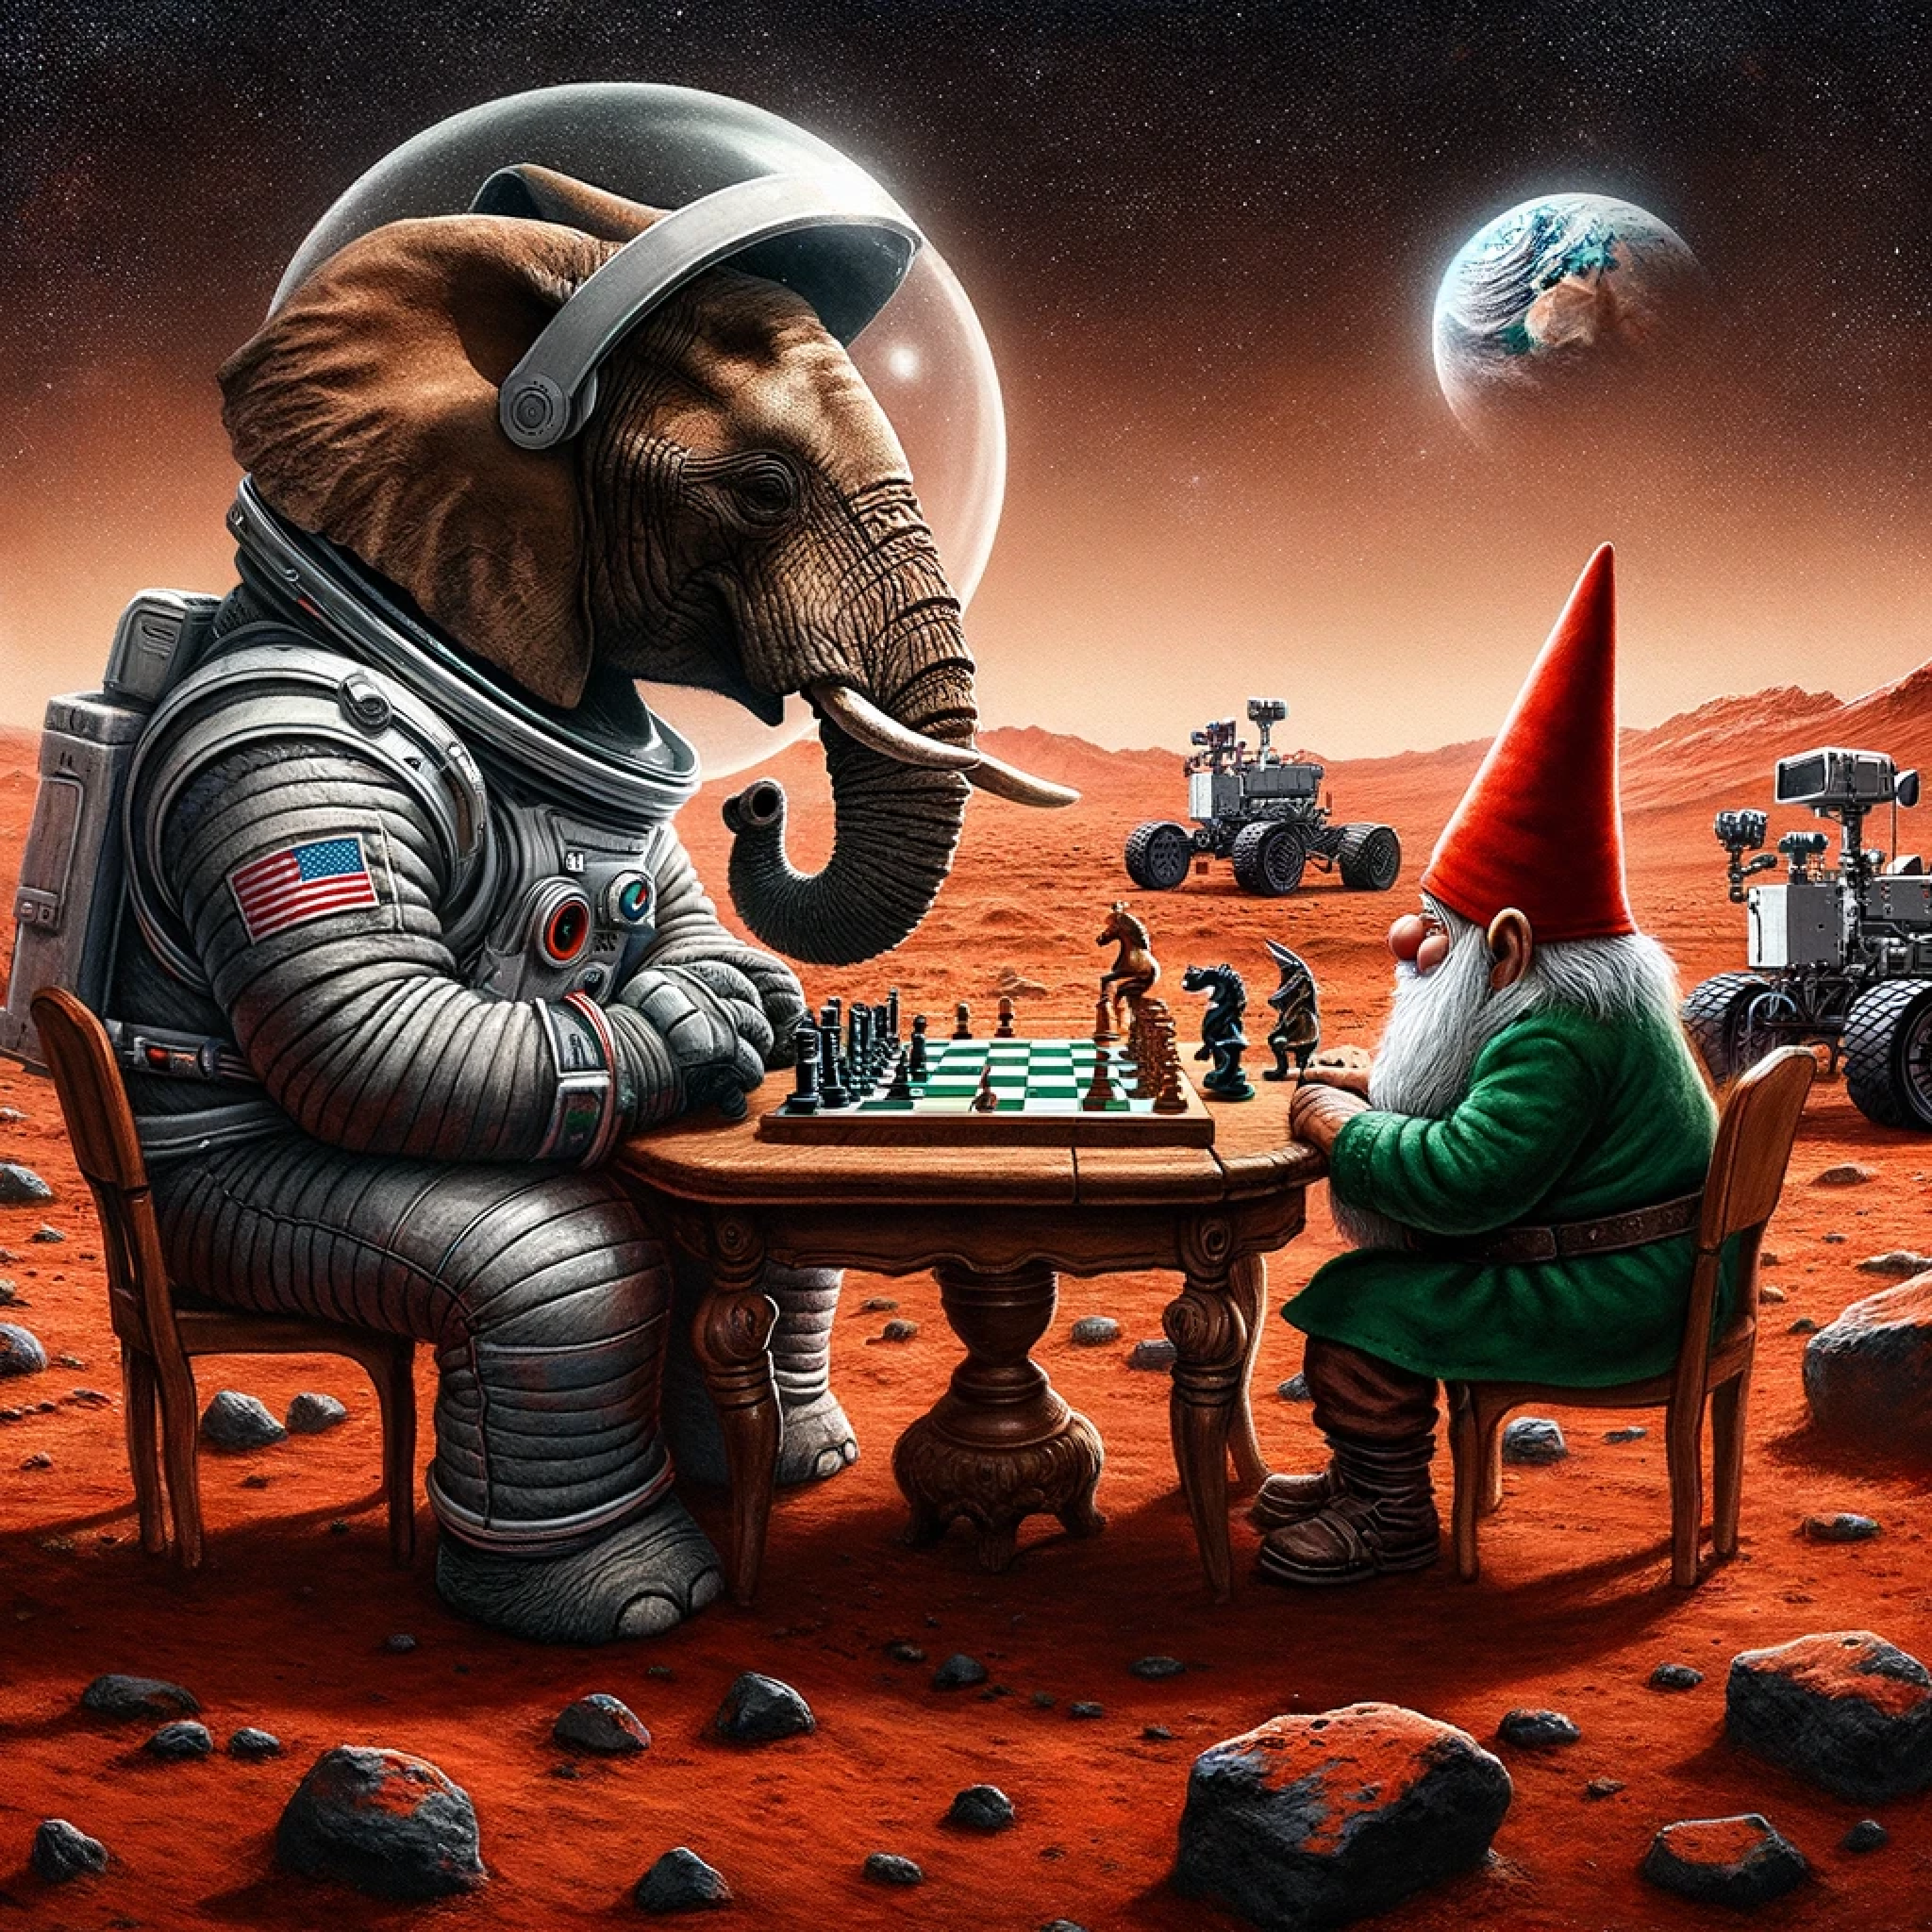 un elefante jugando al ajedrez contra un gnomo en Marte